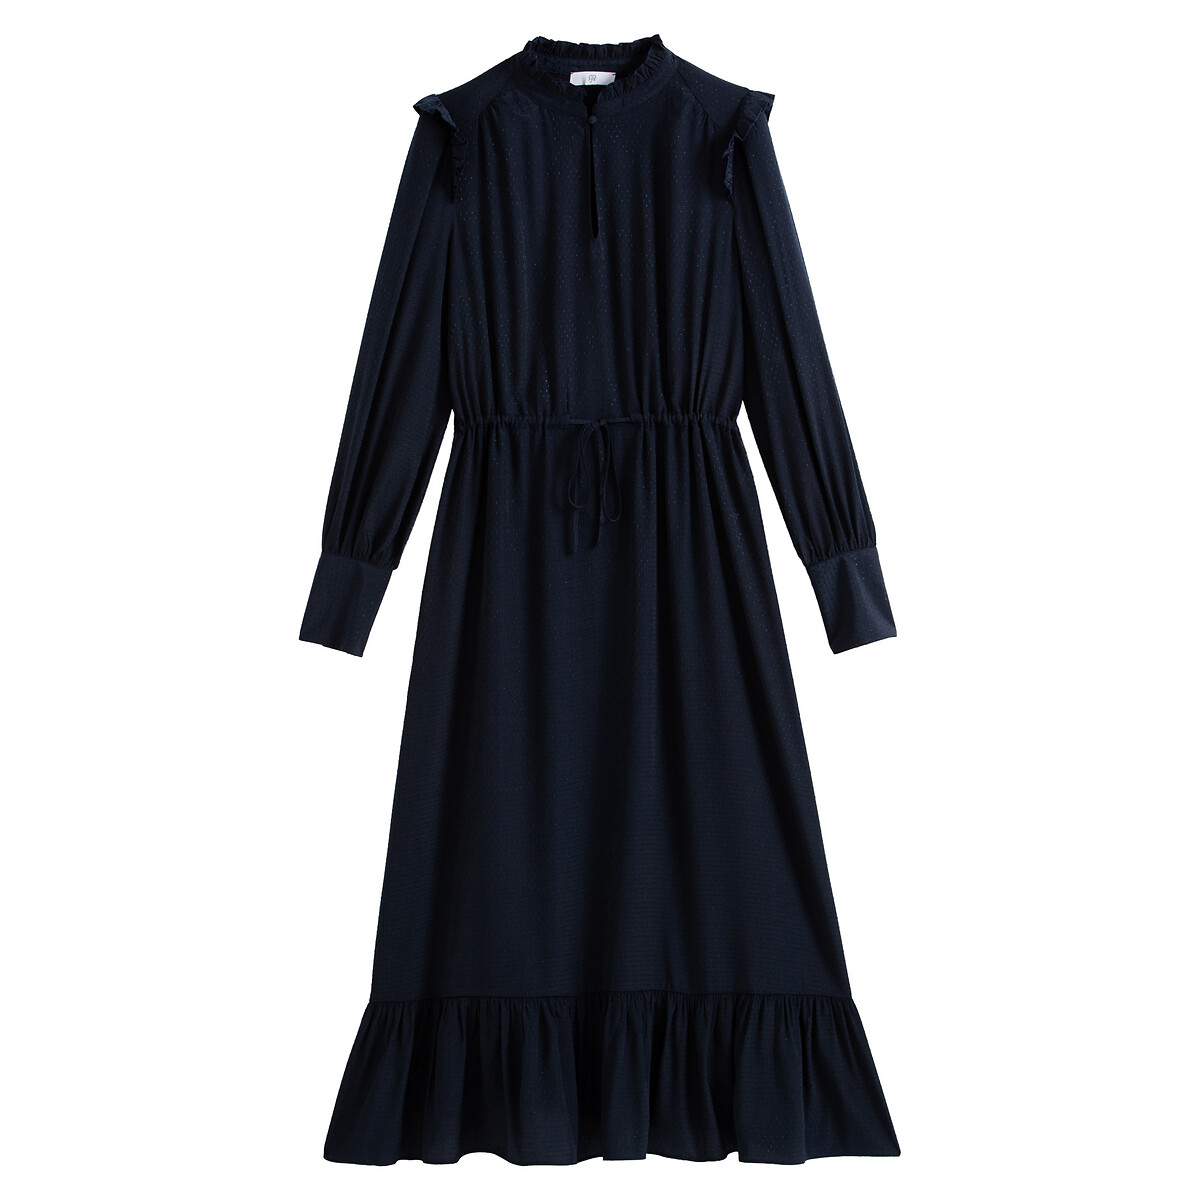 Платье La Redoute Длинное из атласной ткани 36 (FR) - 42 (RUS) синий, размер 36 (FR) - 42 (RUS) Длинное из атласной ткани 36 (FR) - 42 (RUS) синий - фото 5